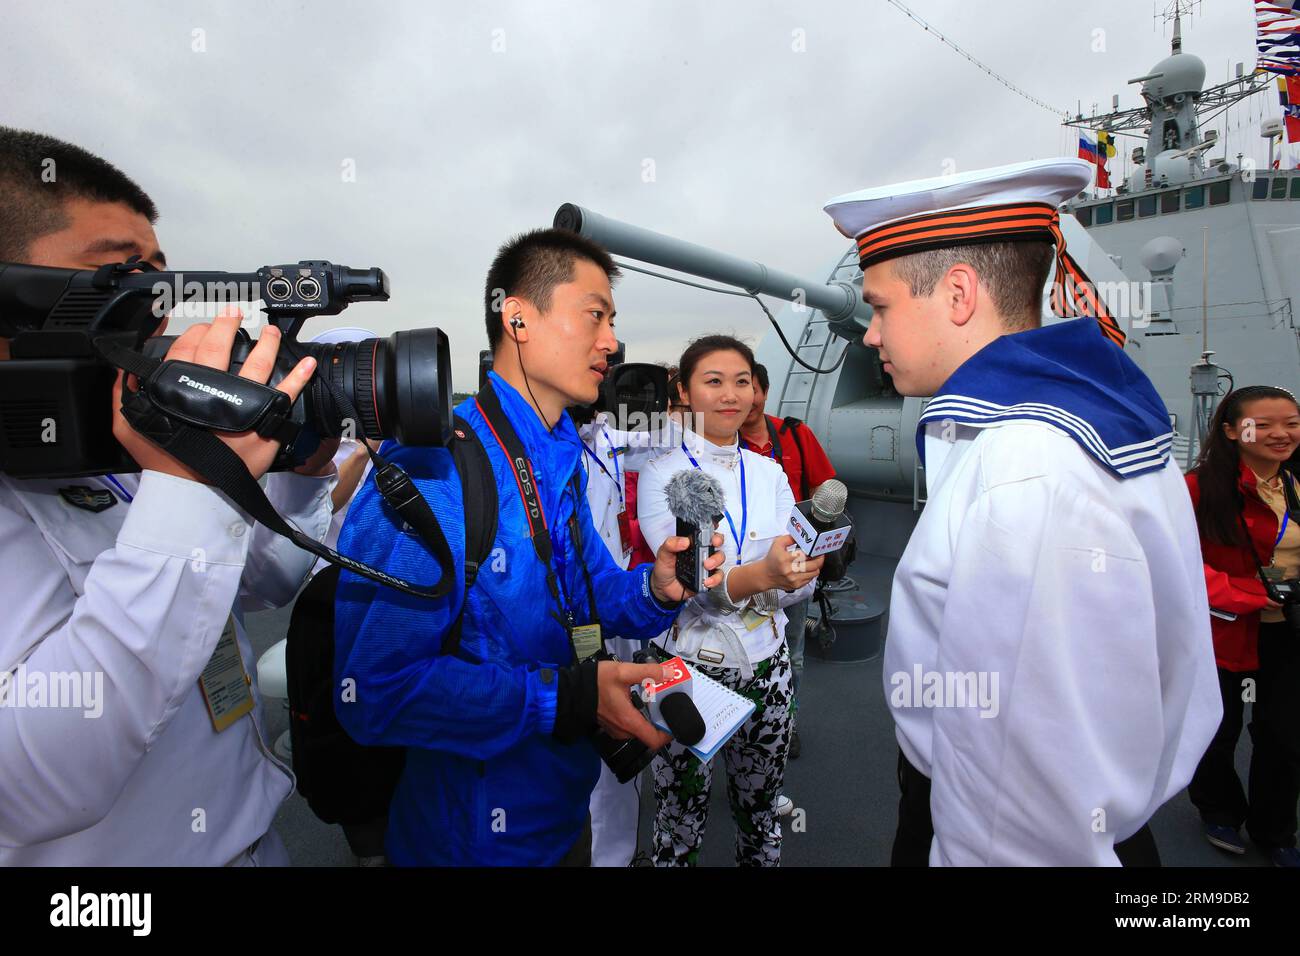 (140519) -- SHANGHAI, 19 mai 2014 (Xinhua) -- des soldats du croiseur russe de missiles guidés Varyag reçoivent une interview lors d'une visite du destroyer chinois Zhengzhou à Shanghai, dans l'est de la Chine, le 19 mai 2014. Les forces navales chinoises et russes ont tenu des activités d'échange lundi pour améliorer la communication mutuelle. Le forage conjoint Sea-2014 aura lieu dans la partie nord de la mer de Chine orientale du 20 au 26 mai. Il s agira du troisième exercice de ce type après des exercices conjoints au large des côtes de l extrême-Orient russe en juillet 2013 et de la mer jaune en avril 2012. (Xinhua/Zha Chunming) (zc) CHINE-SHANGHAI-JOIN Banque D'Images